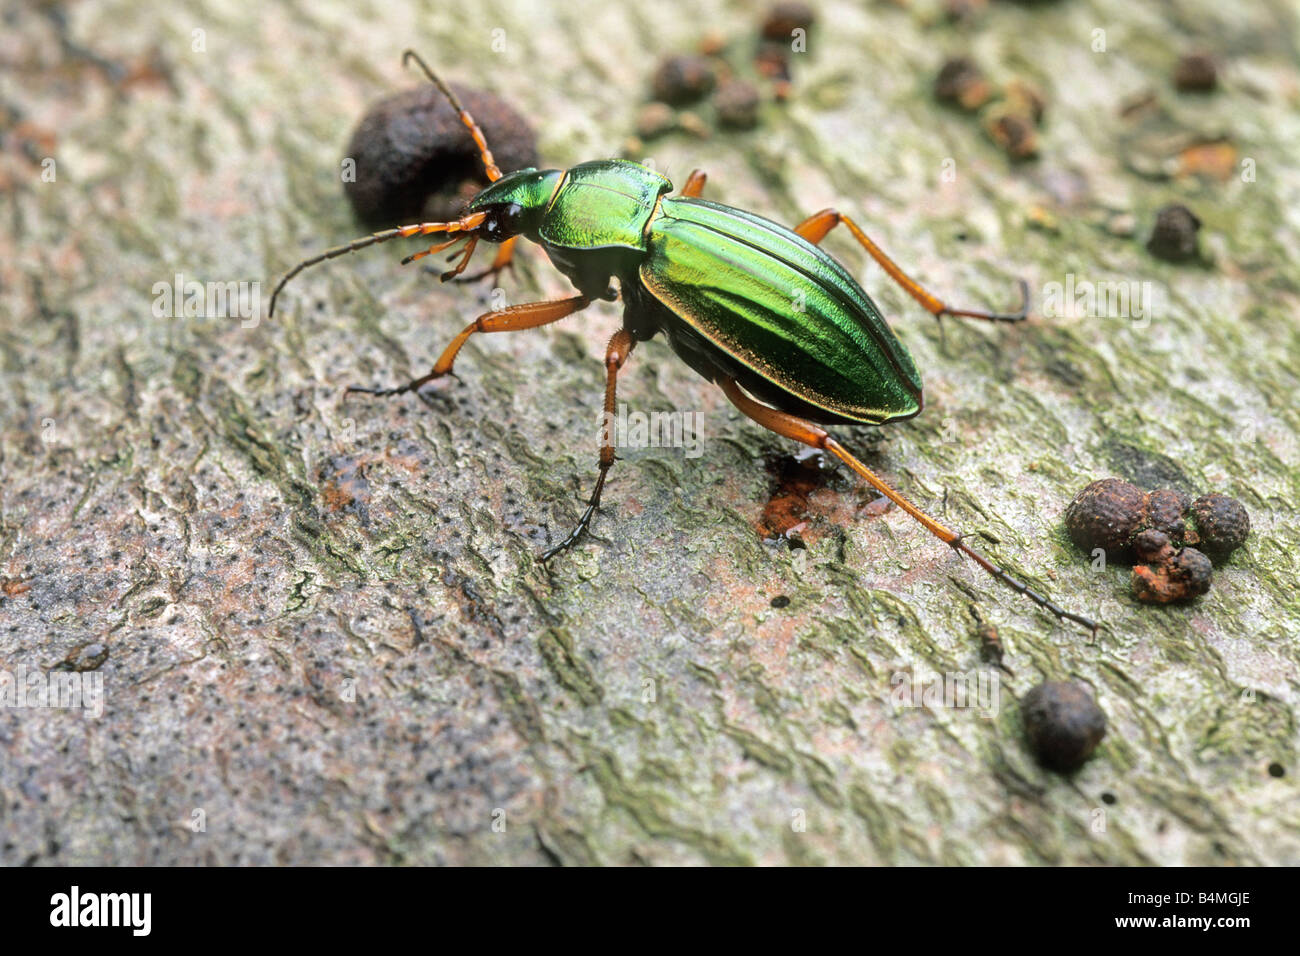 Golden Ground Beetle (Carabus auratus) on bark Stock Photo